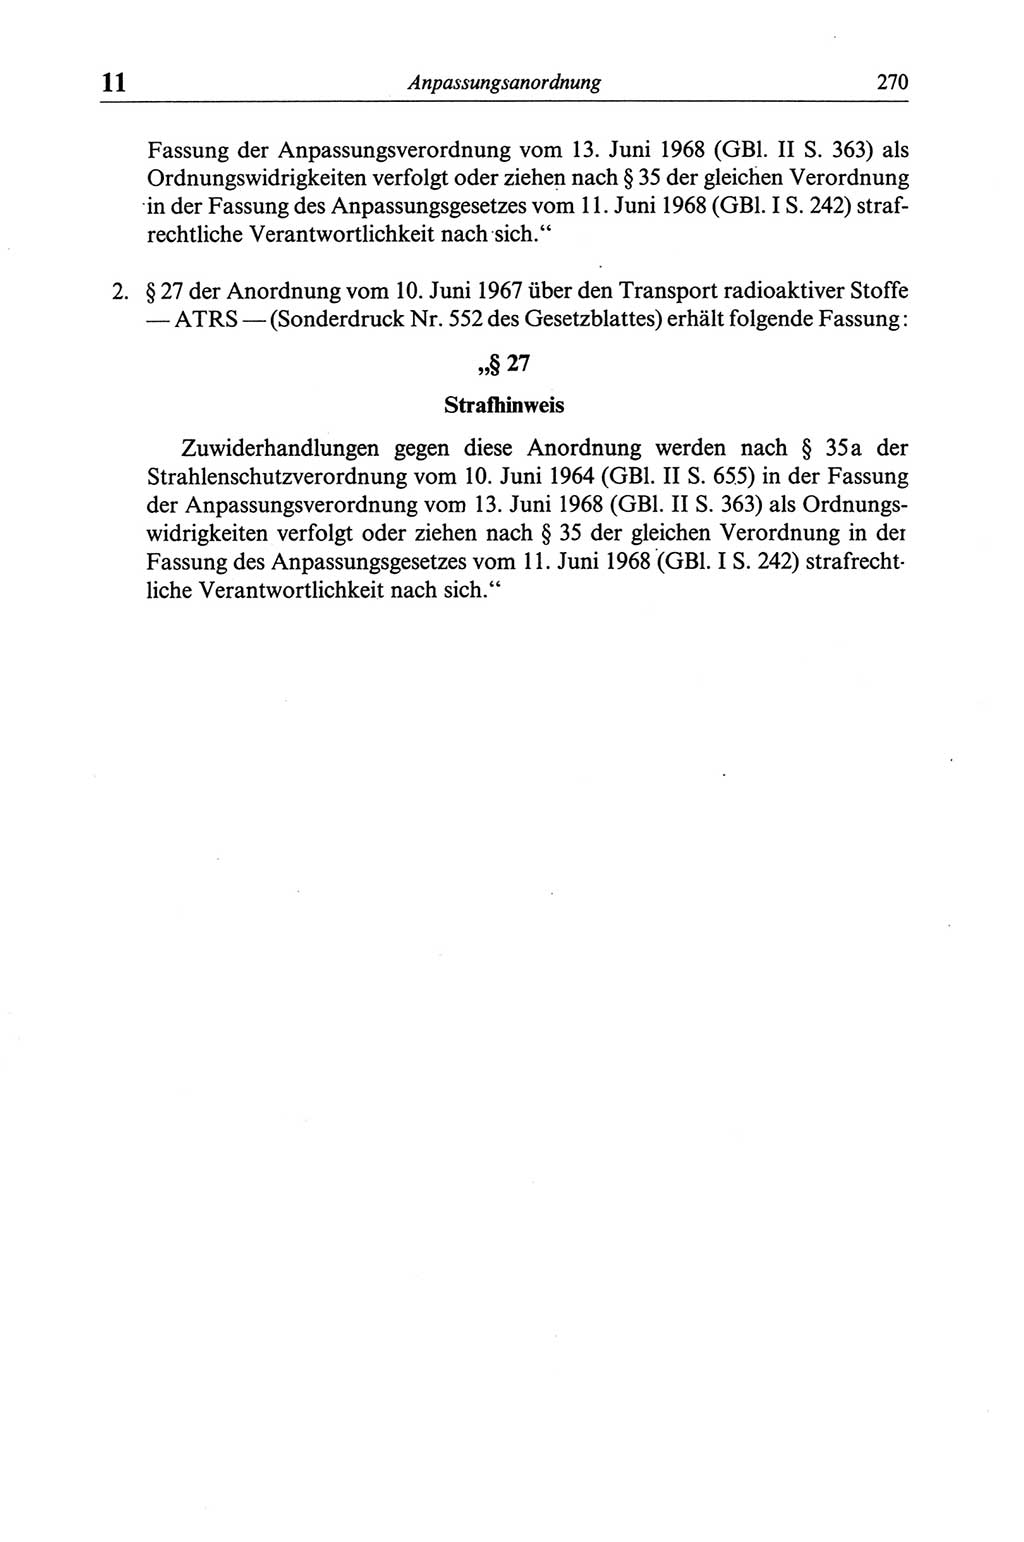 Strafgesetzbuch (StGB) der Deutschen Demokratischen Republik (DDR) und angrenzende Gesetze und Bestimmungen 1968, Seite 270 (StGB Ges. Best. DDR 1968, S. 270)